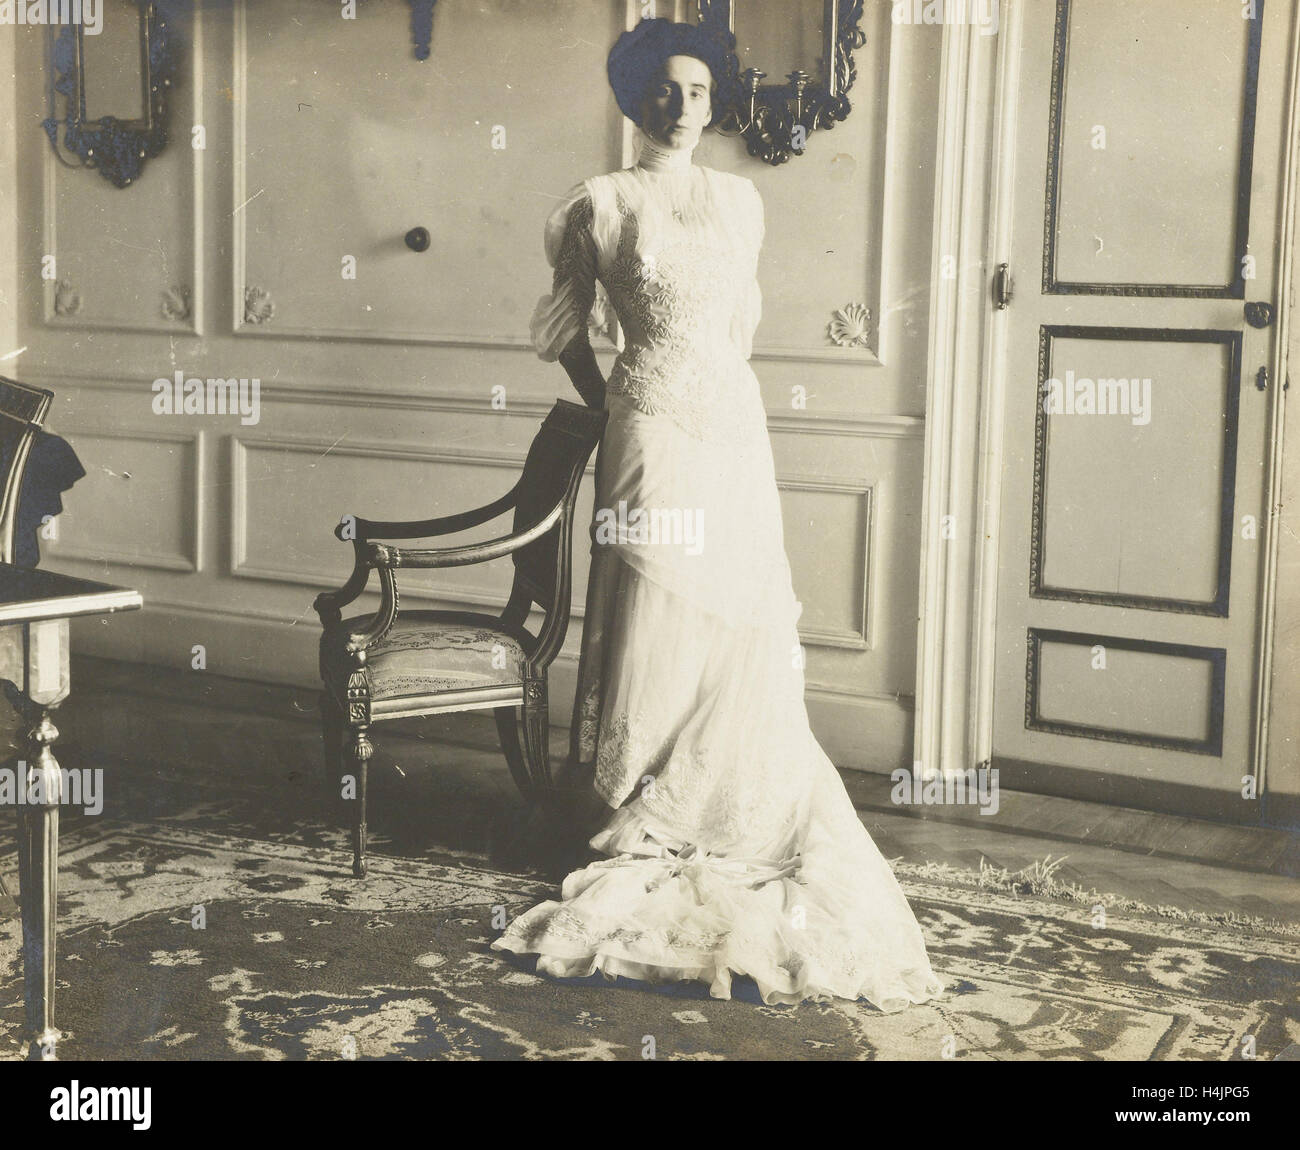 Femme non identifiée debout dans un intérieur, Anonyme, 1915 - 1918 Banque D'Images